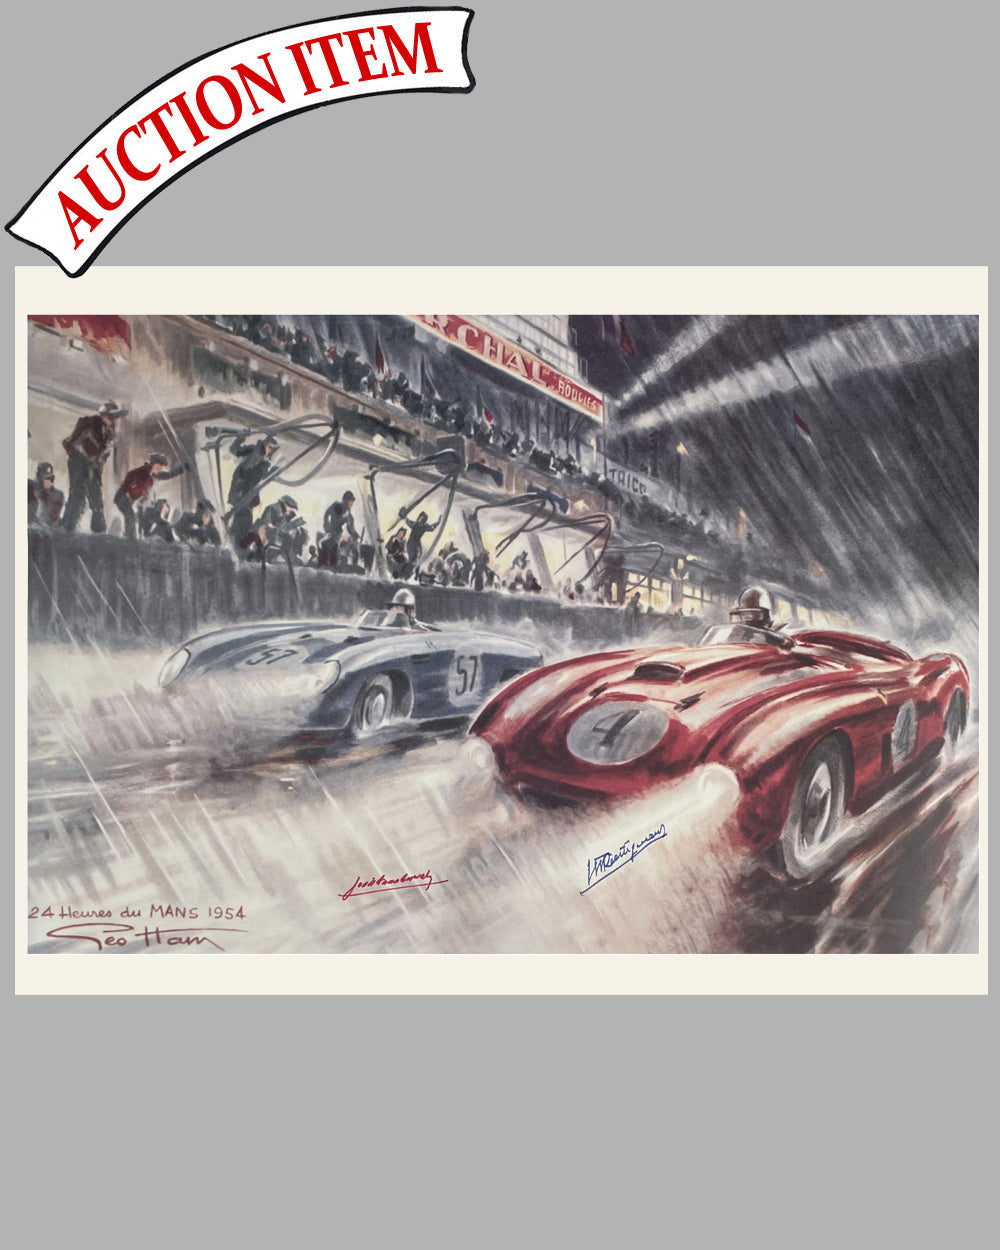 Les 24 Heures du Mans 1954 print by Geo Ham, autographed by Trintignant & Gonzalez